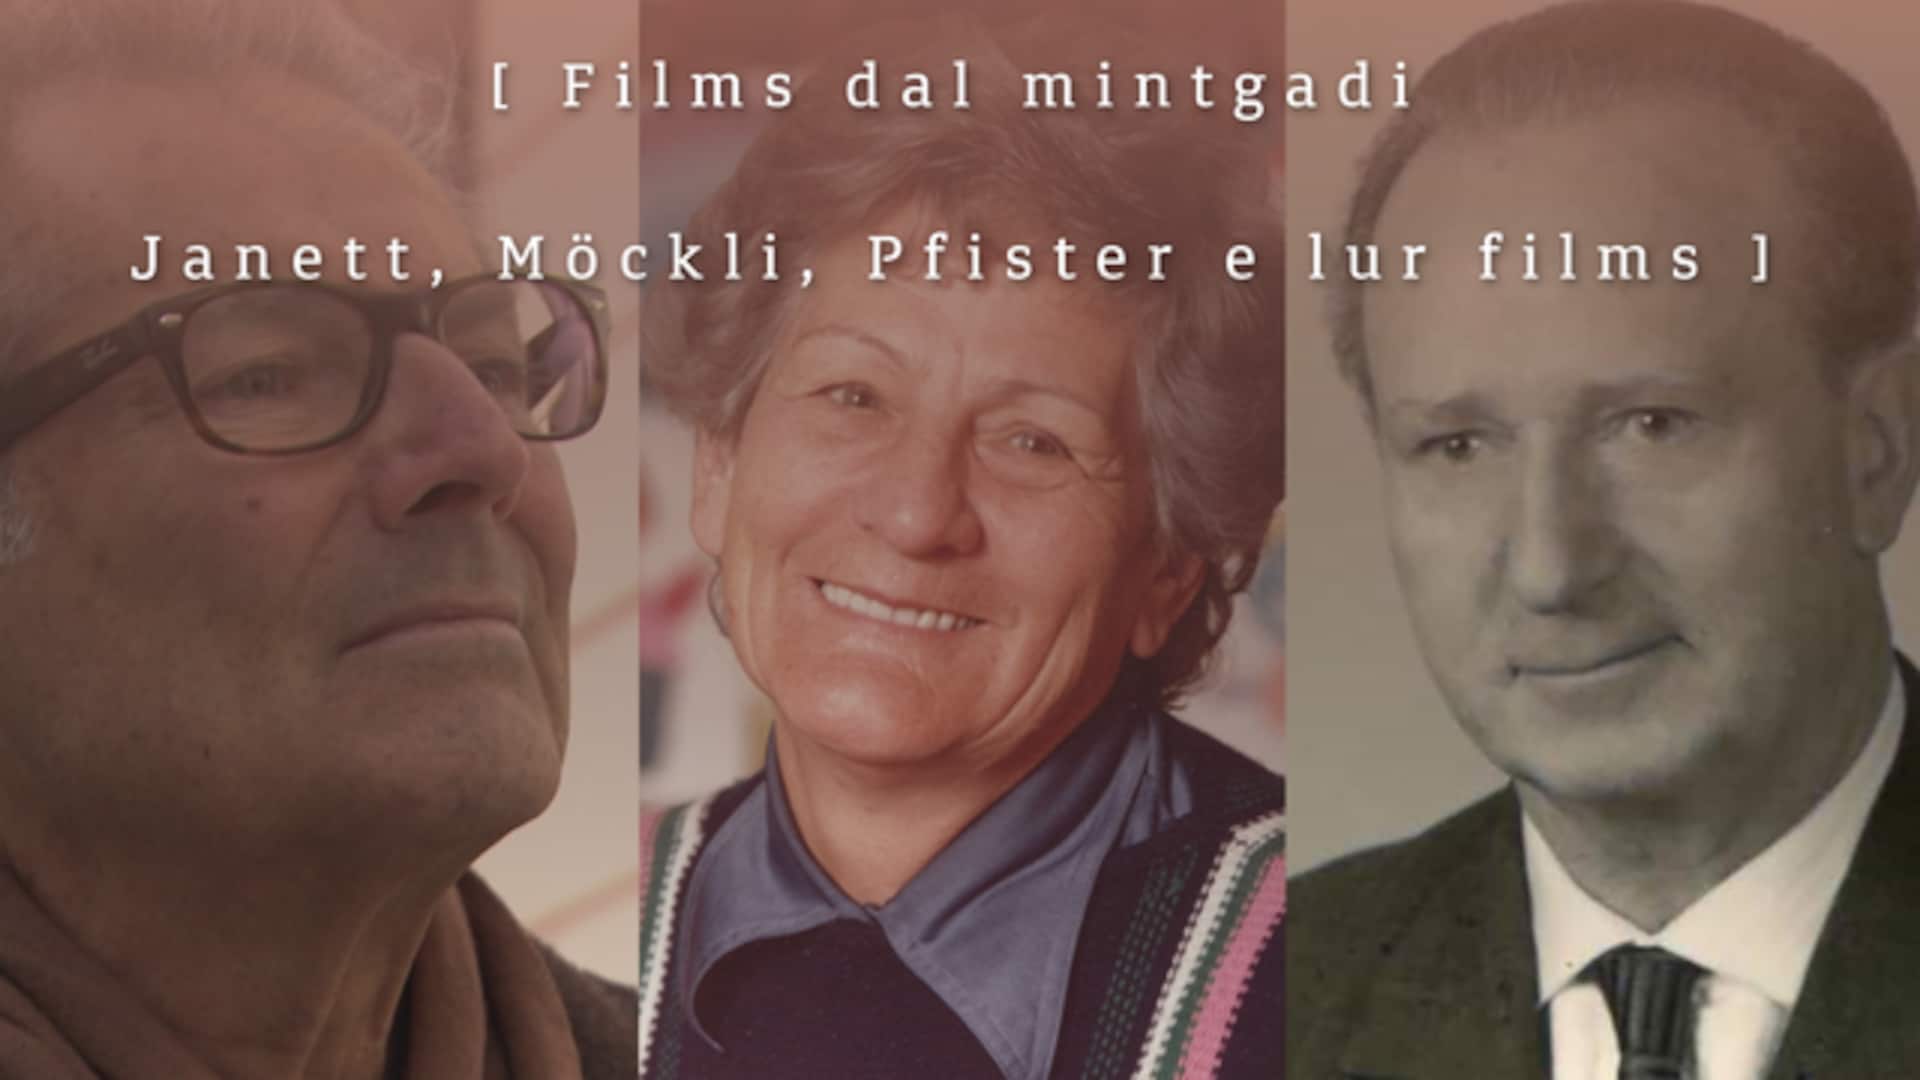 Films dal mintgadi -Janett, Möckli, Pfister e lur films